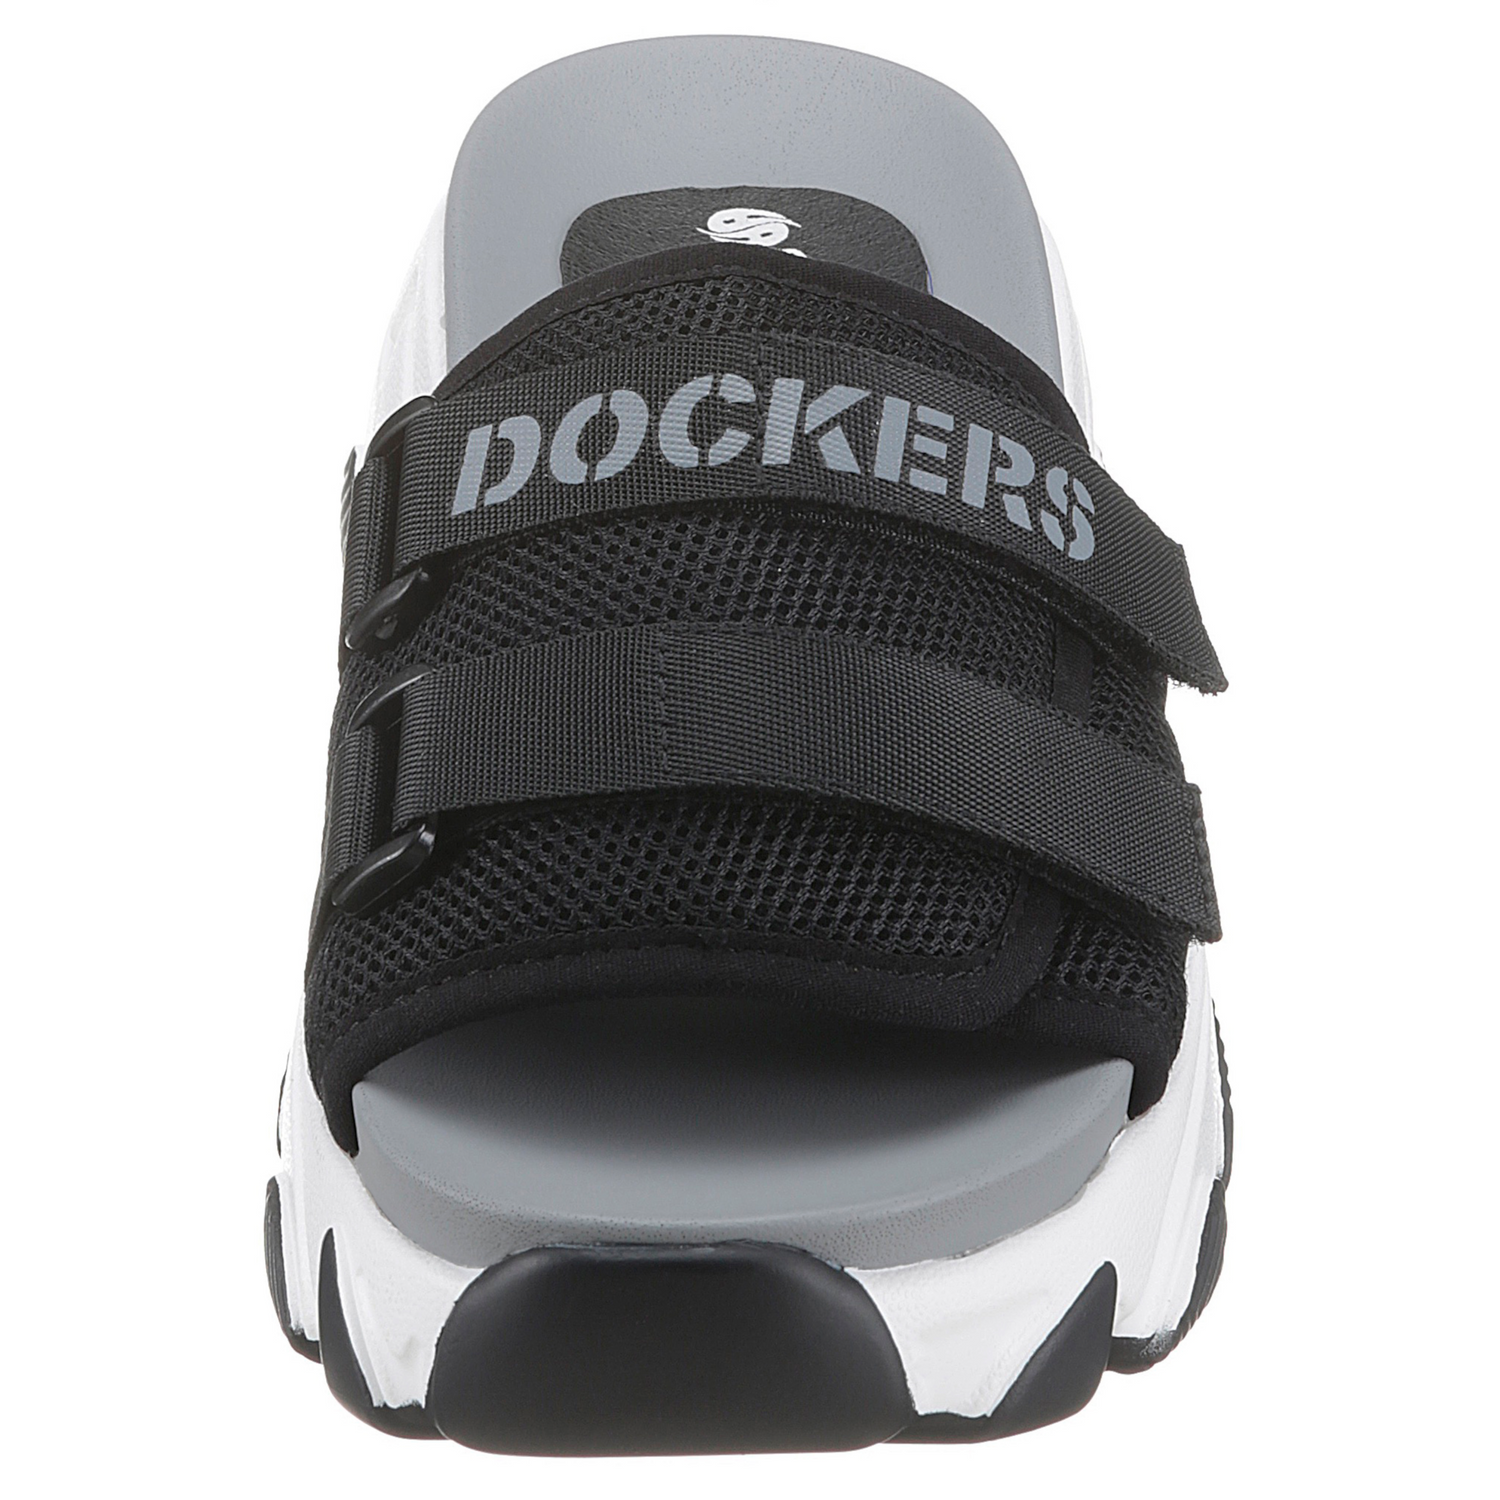 DOCKERS by Gerli Damen Slip-On Sneaker Pantolette Schuhe